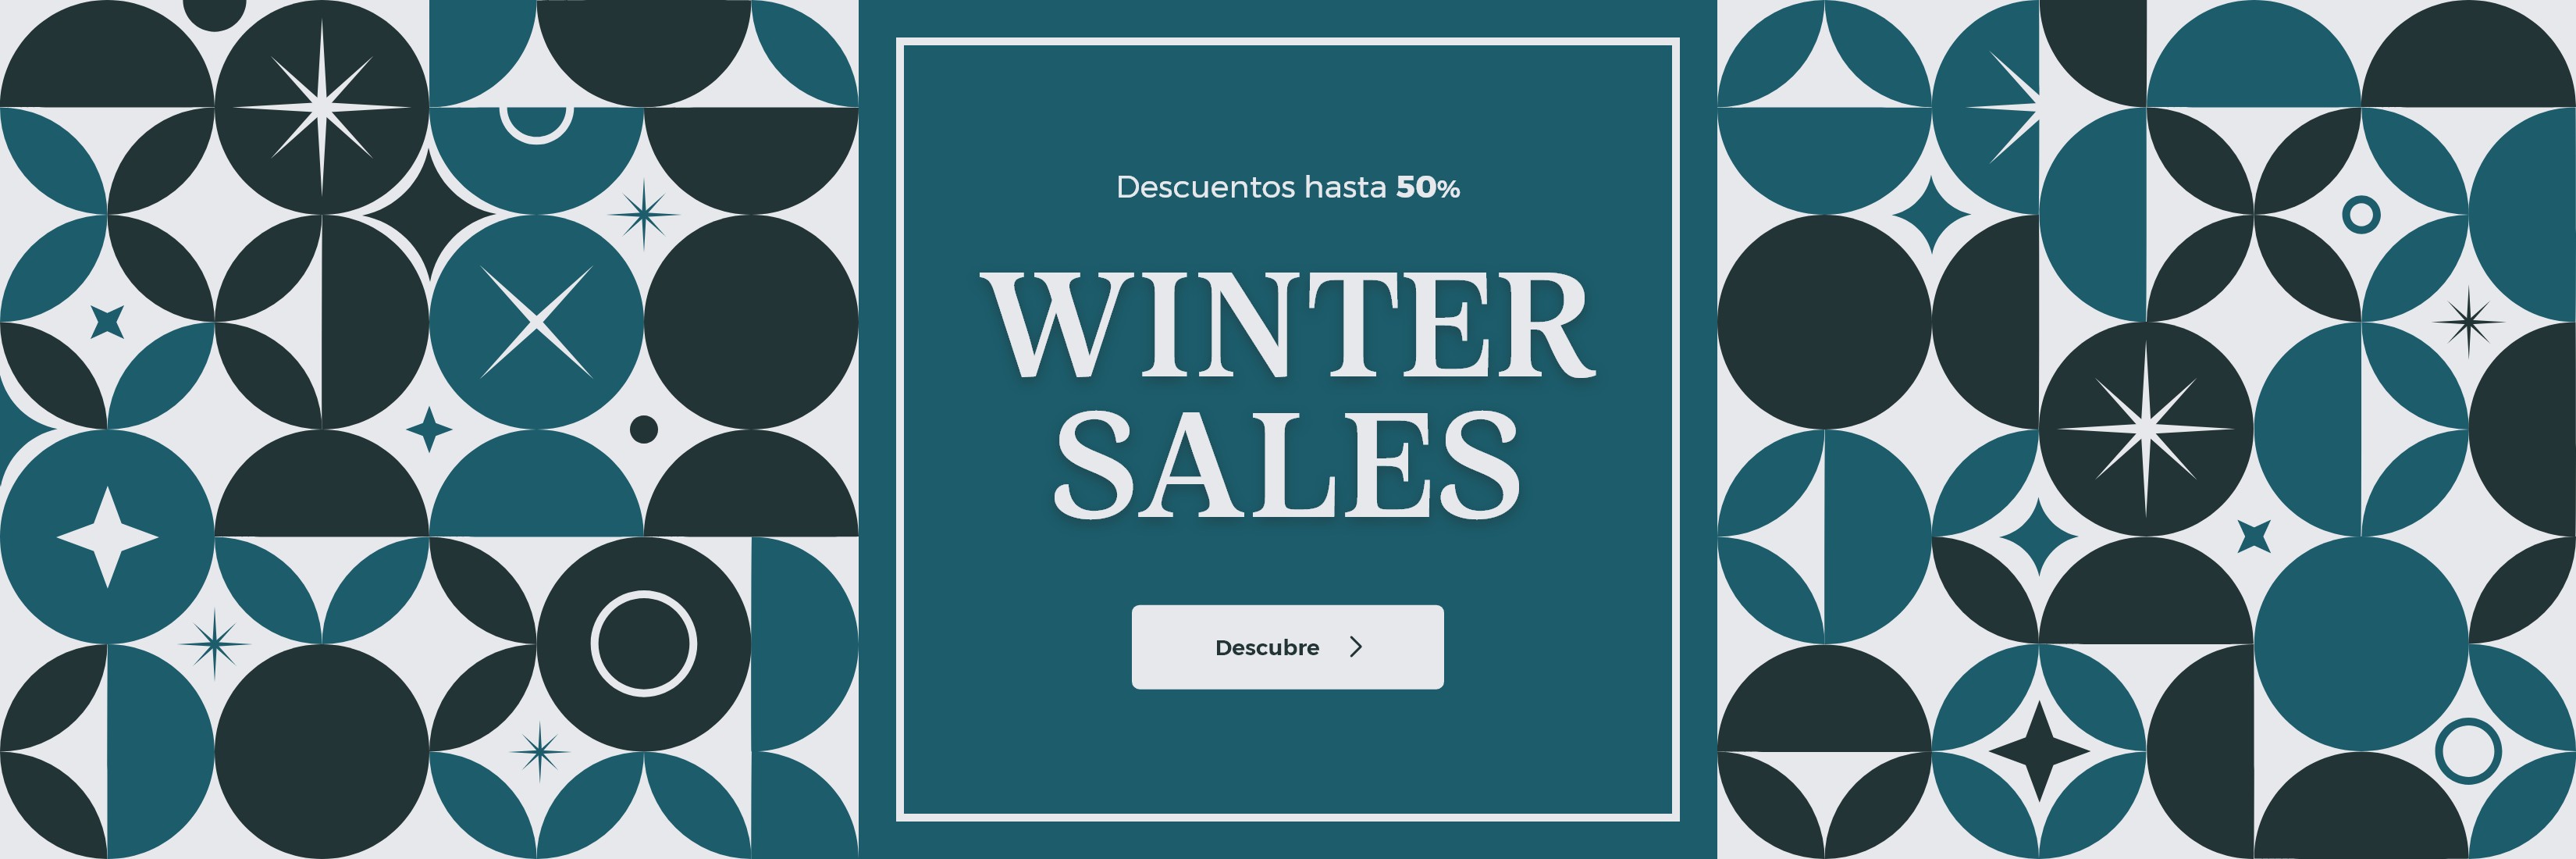 WINTER SALES HASTA -50% EXPIRA EL 31.01